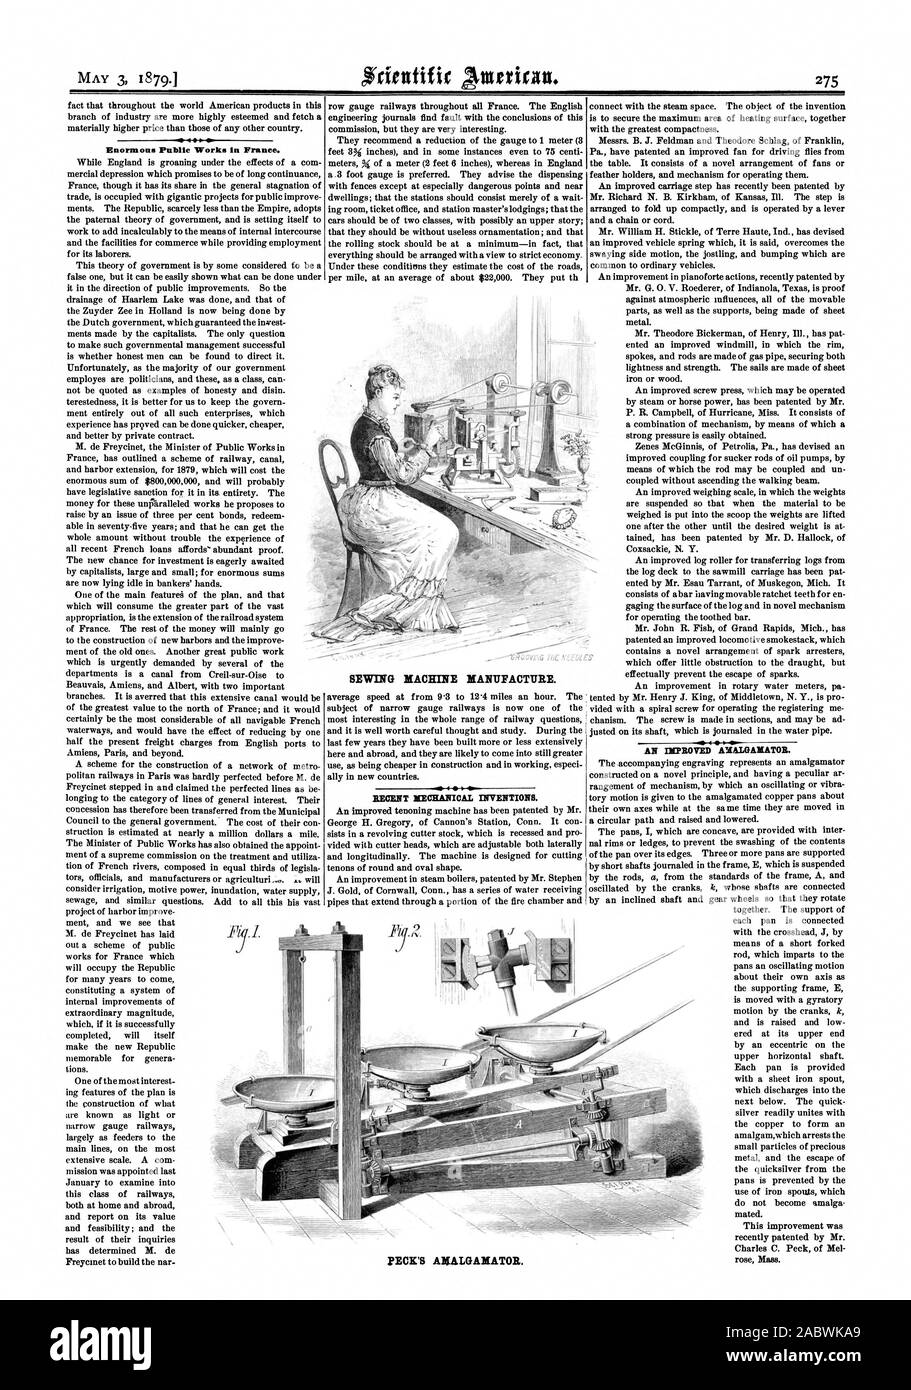 450 MAI 3 1879.1 enorme öffentliche Arbeiten in Frankreich. Nähmaschine herstellen. Pecks AMALGAMATOR., Scientific American, 1879-05-03 Stockfoto